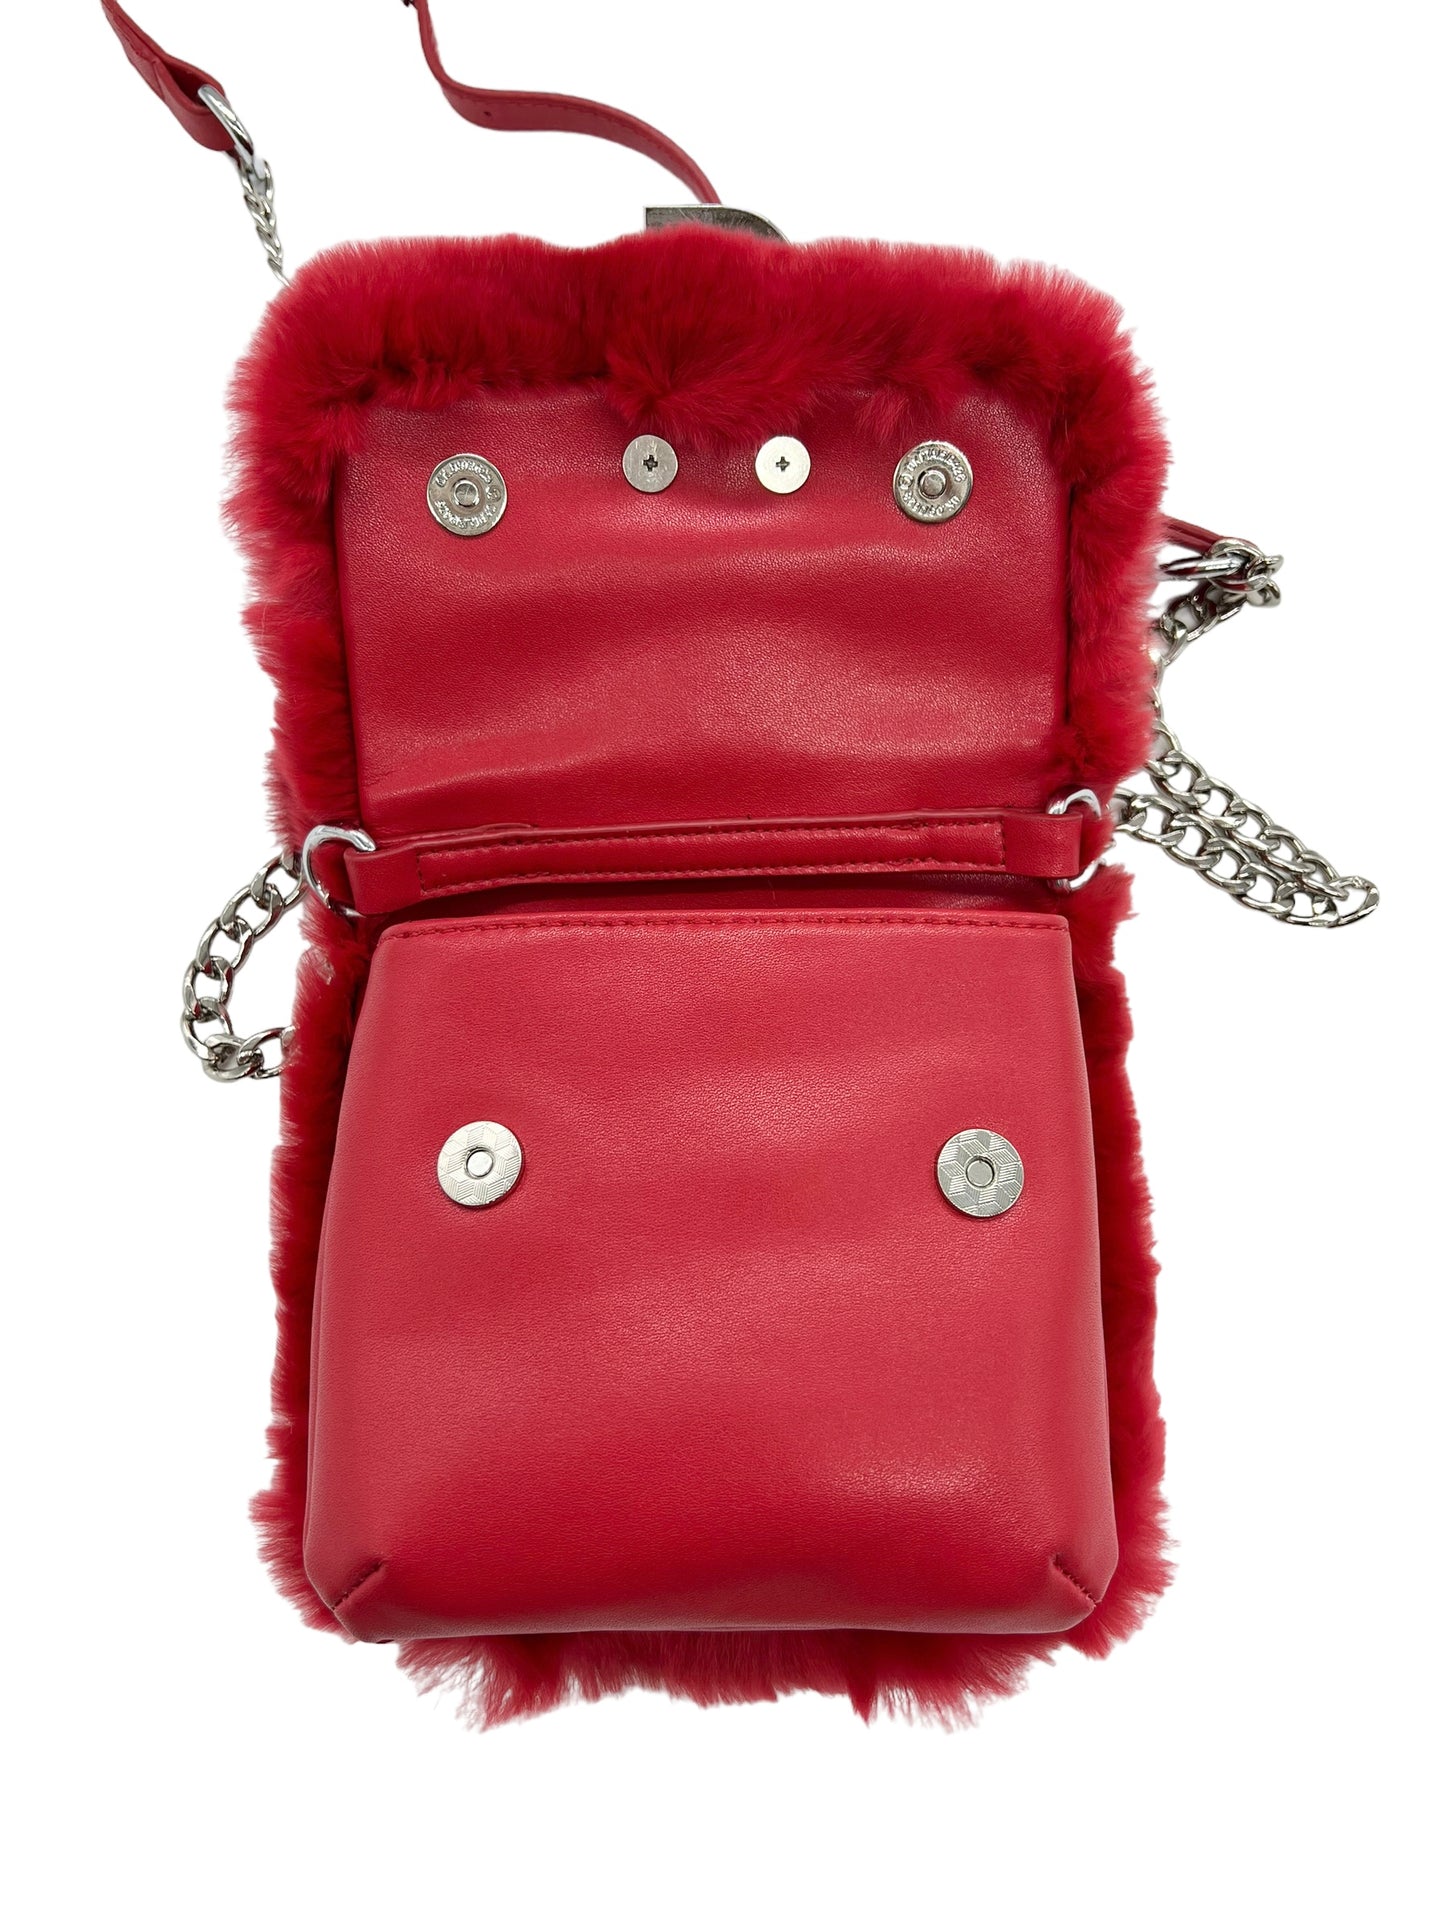 Shane Justin Red Fur Power Puff Chain Bag